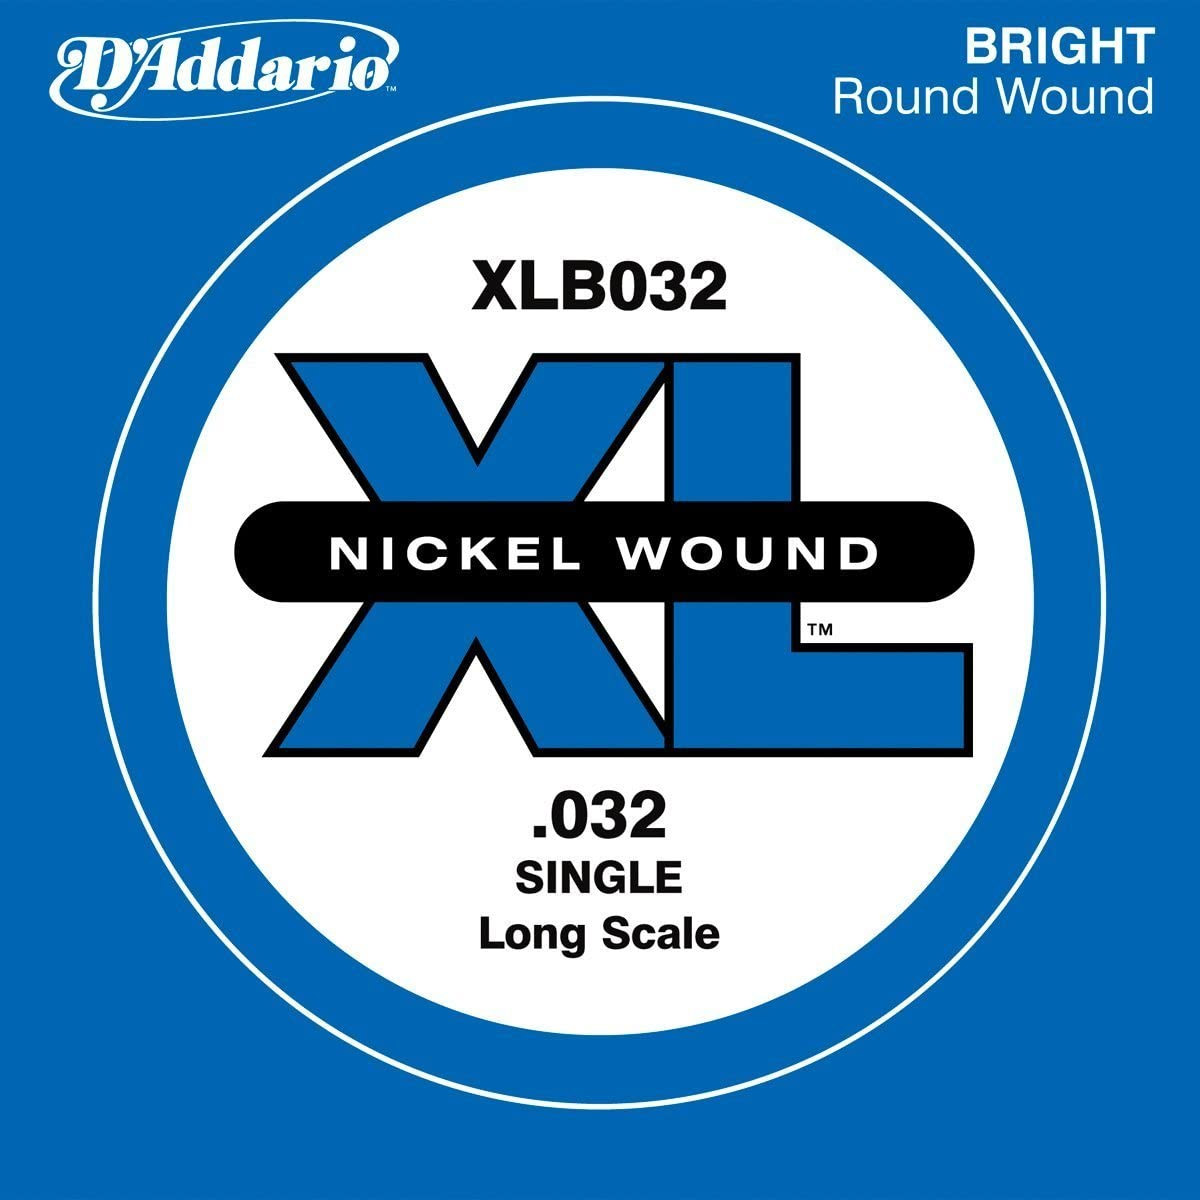 D'Addario XLB032 ベース弦 XL Nickel Wound Long Scale 032 【バラ弦1本】 ダダリオ 【  モザイクモール港北店 】 | 島村楽器オンラインストア